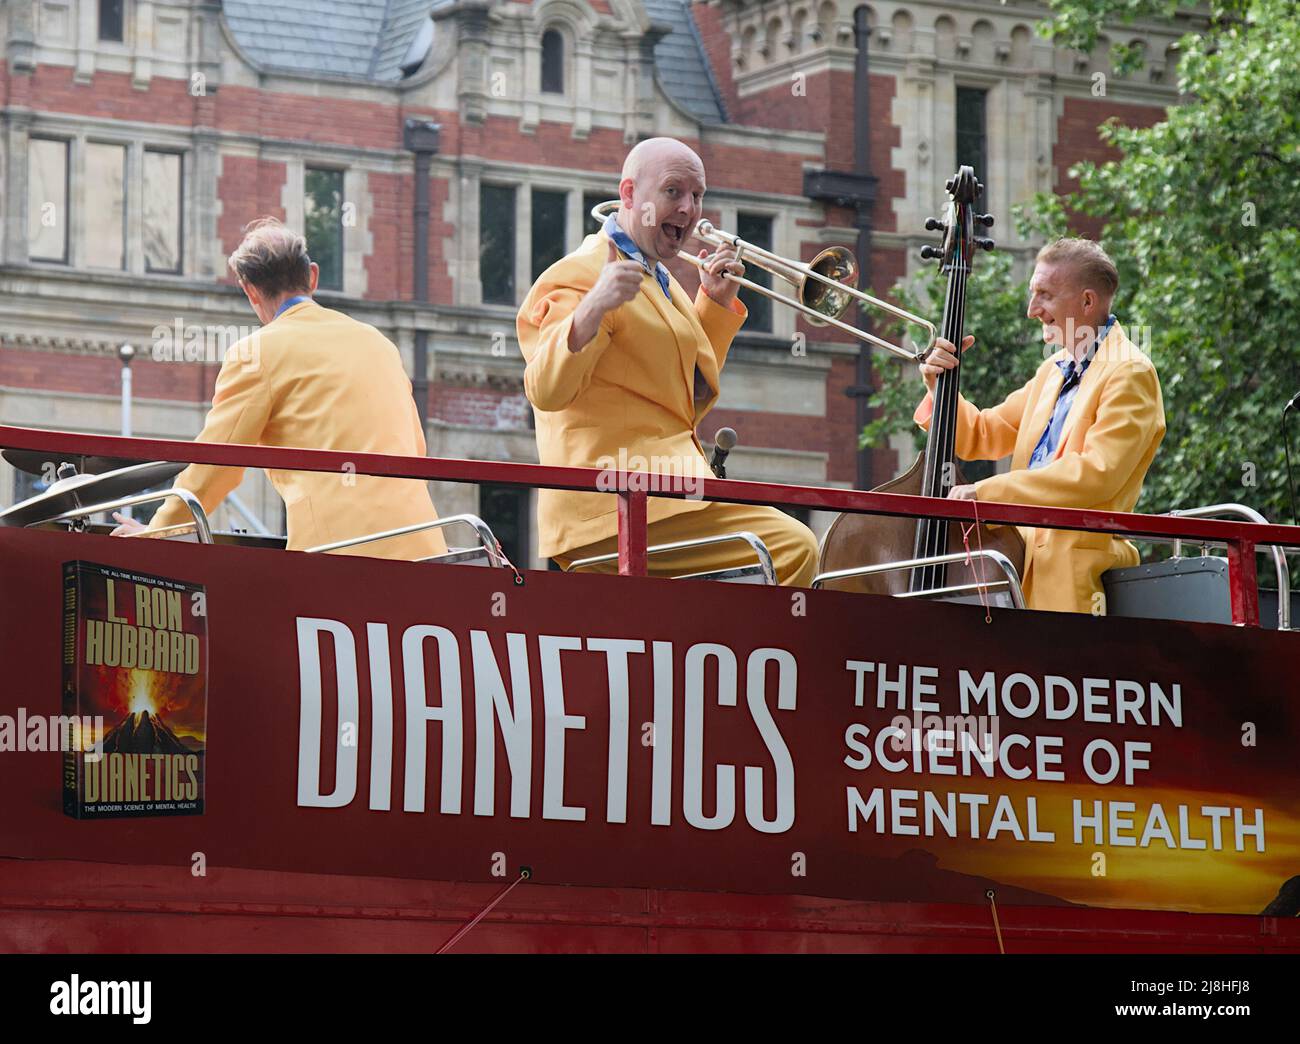 Mitglied Einer Jazz Swing Band Giving A Thumbs Up on the Top eines Red London Bus mit offenem Oberdeck, Werbung für Dianetik, psychische Gesundheit, erstellt von L. Ron Hubbard Stockfoto